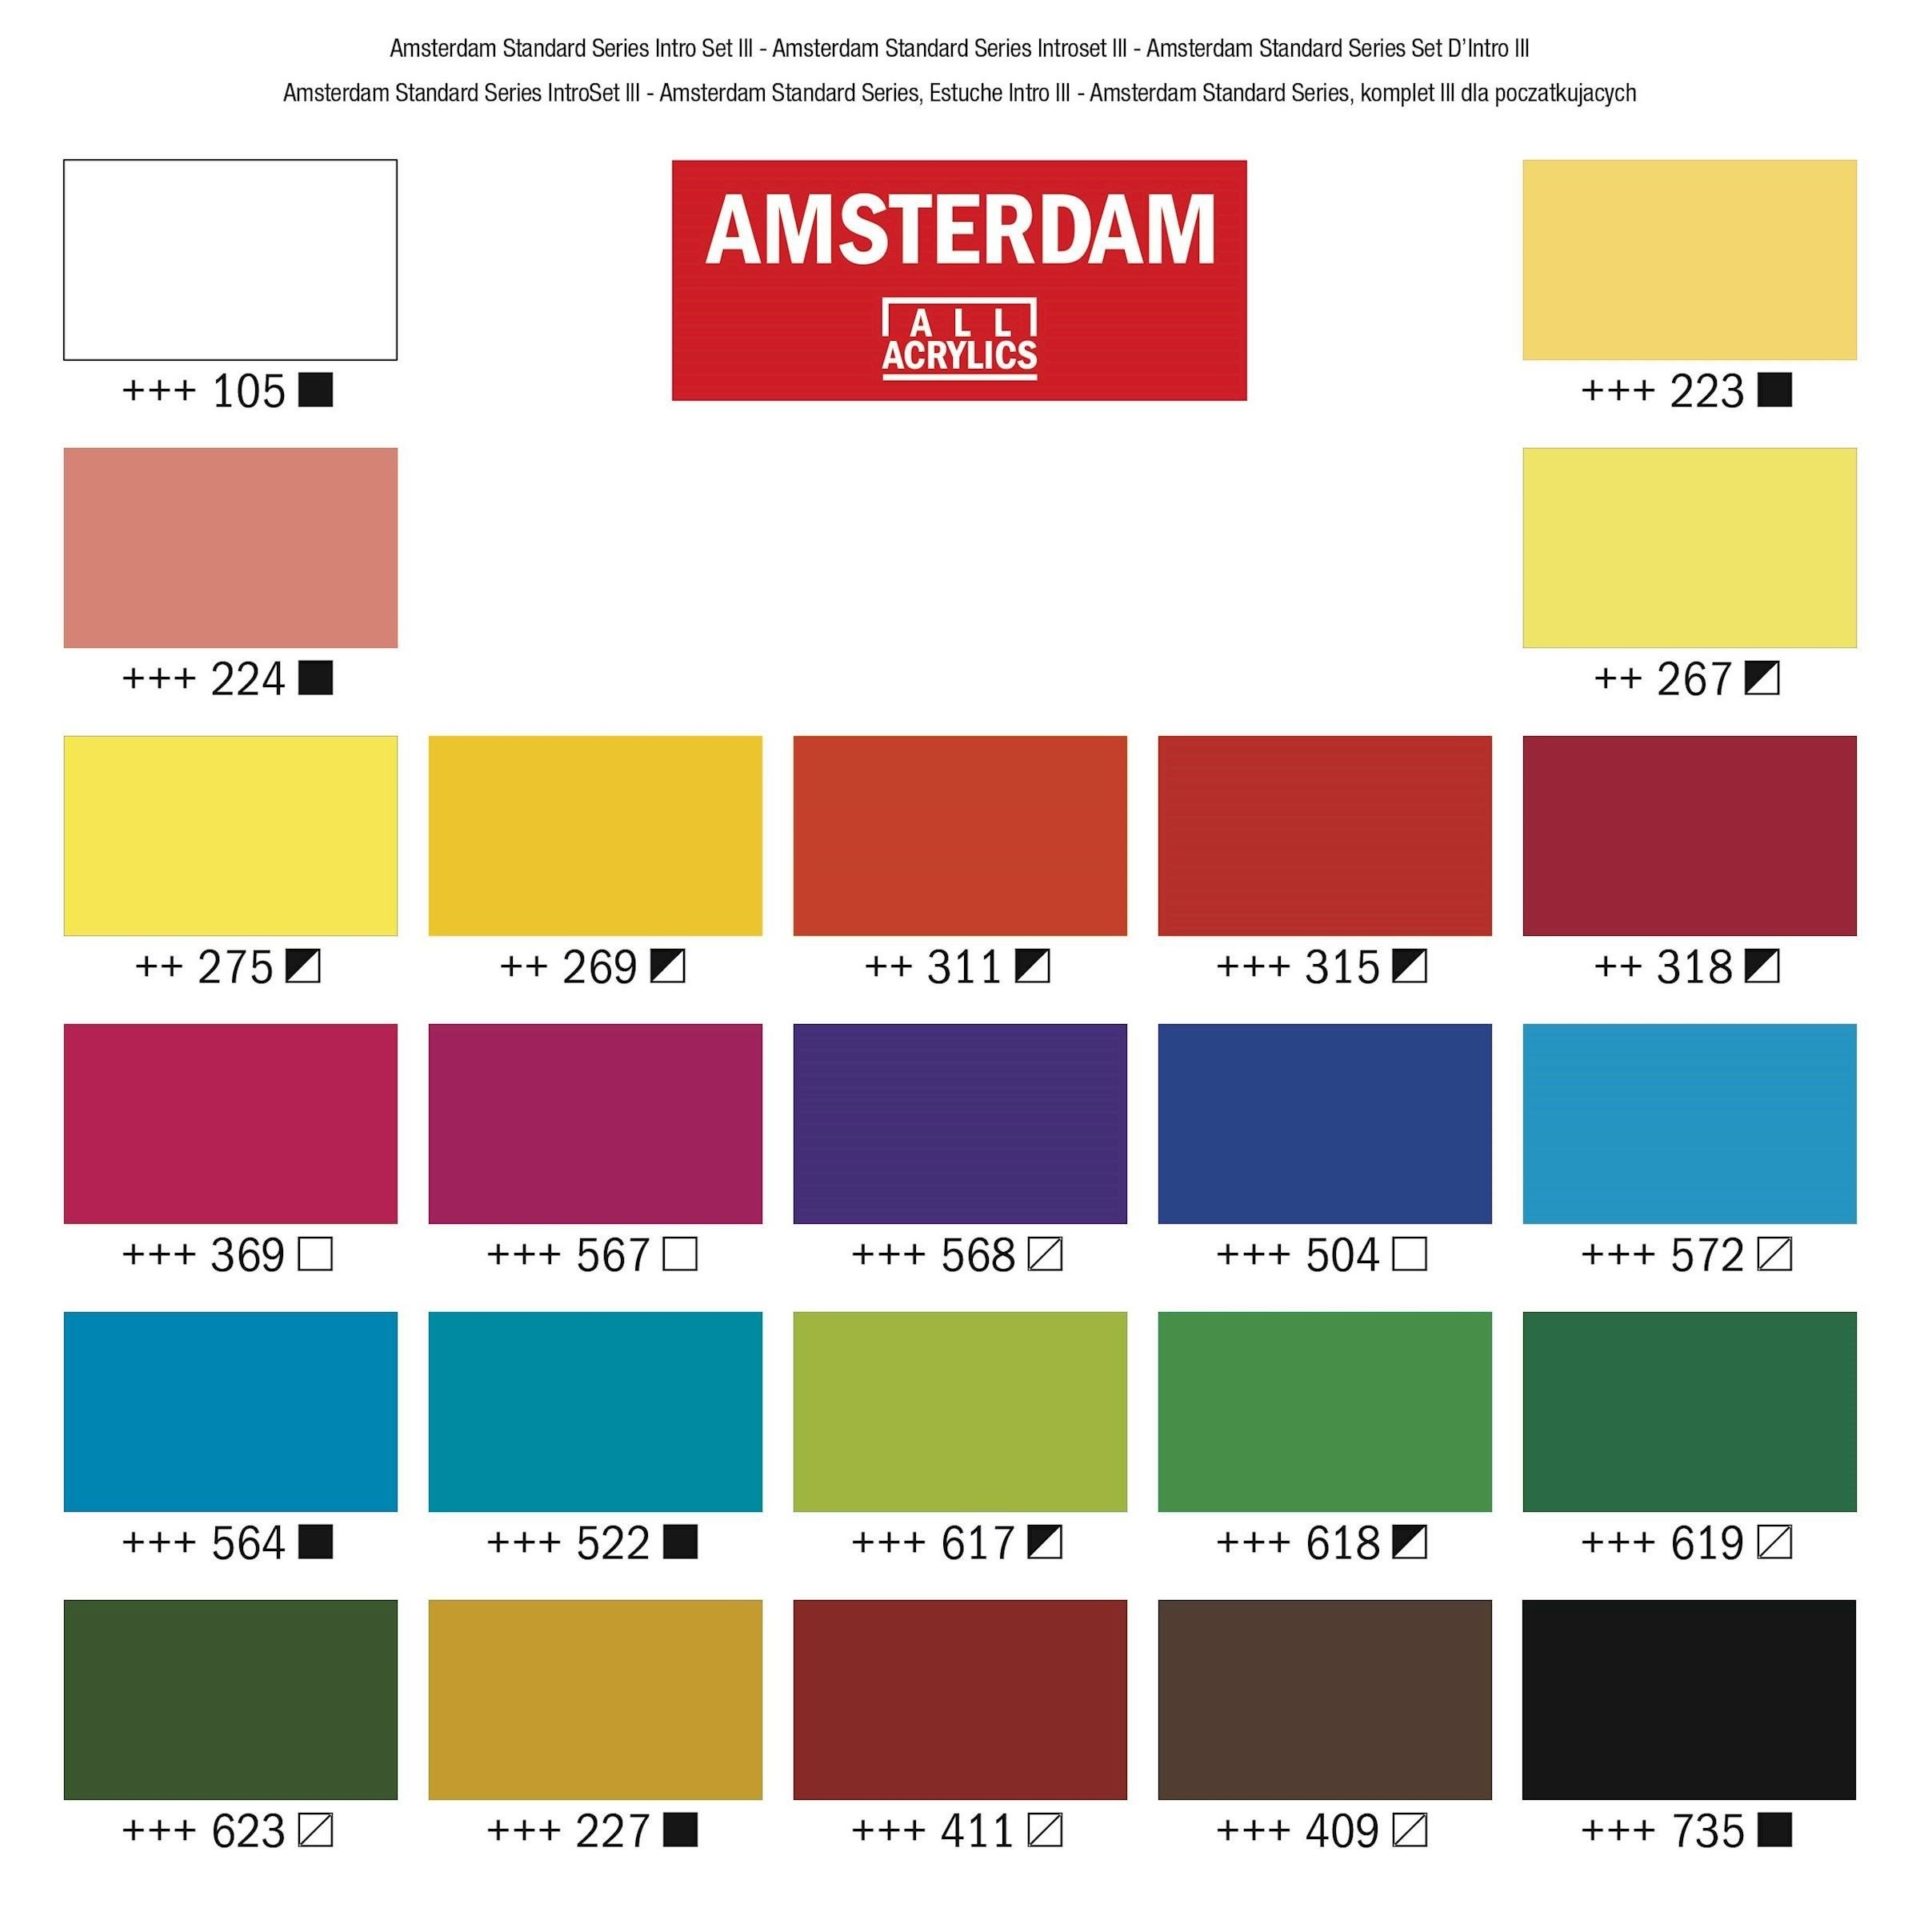 Set Peinture Acrylique de 36 tubes - Amsterdam - Acrylique - Achat